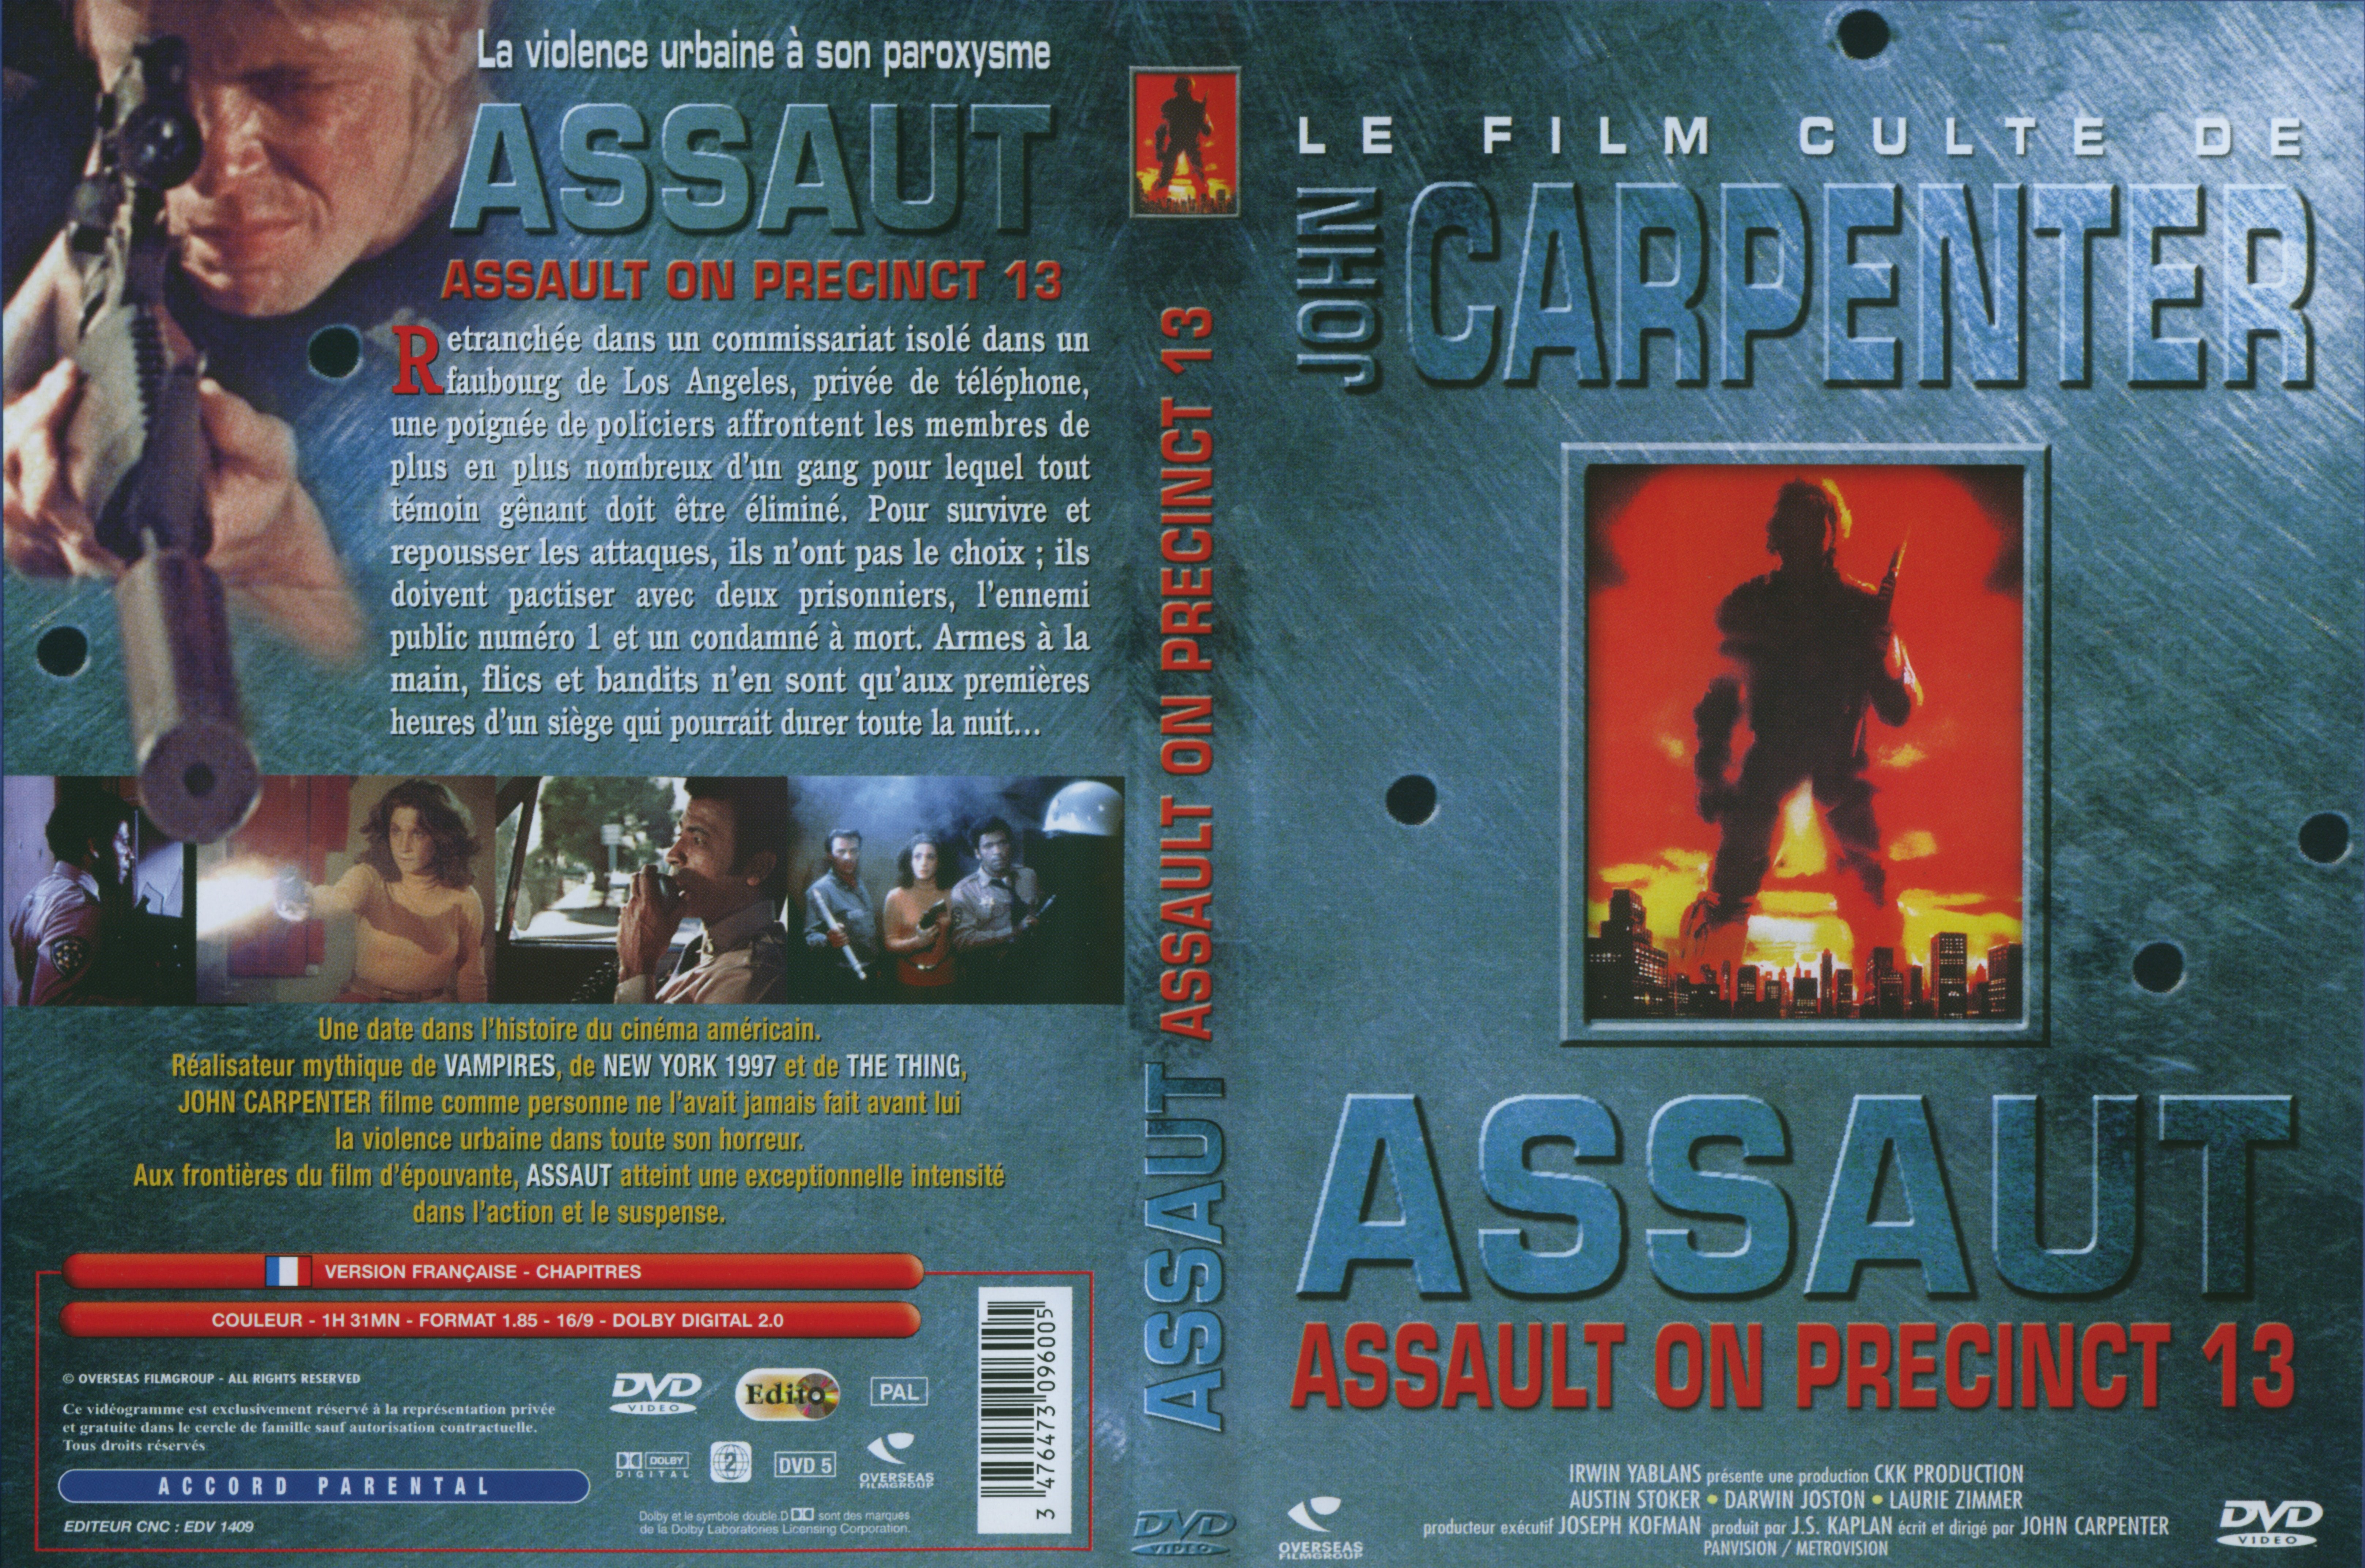 Jaquette DVD Assaut v2